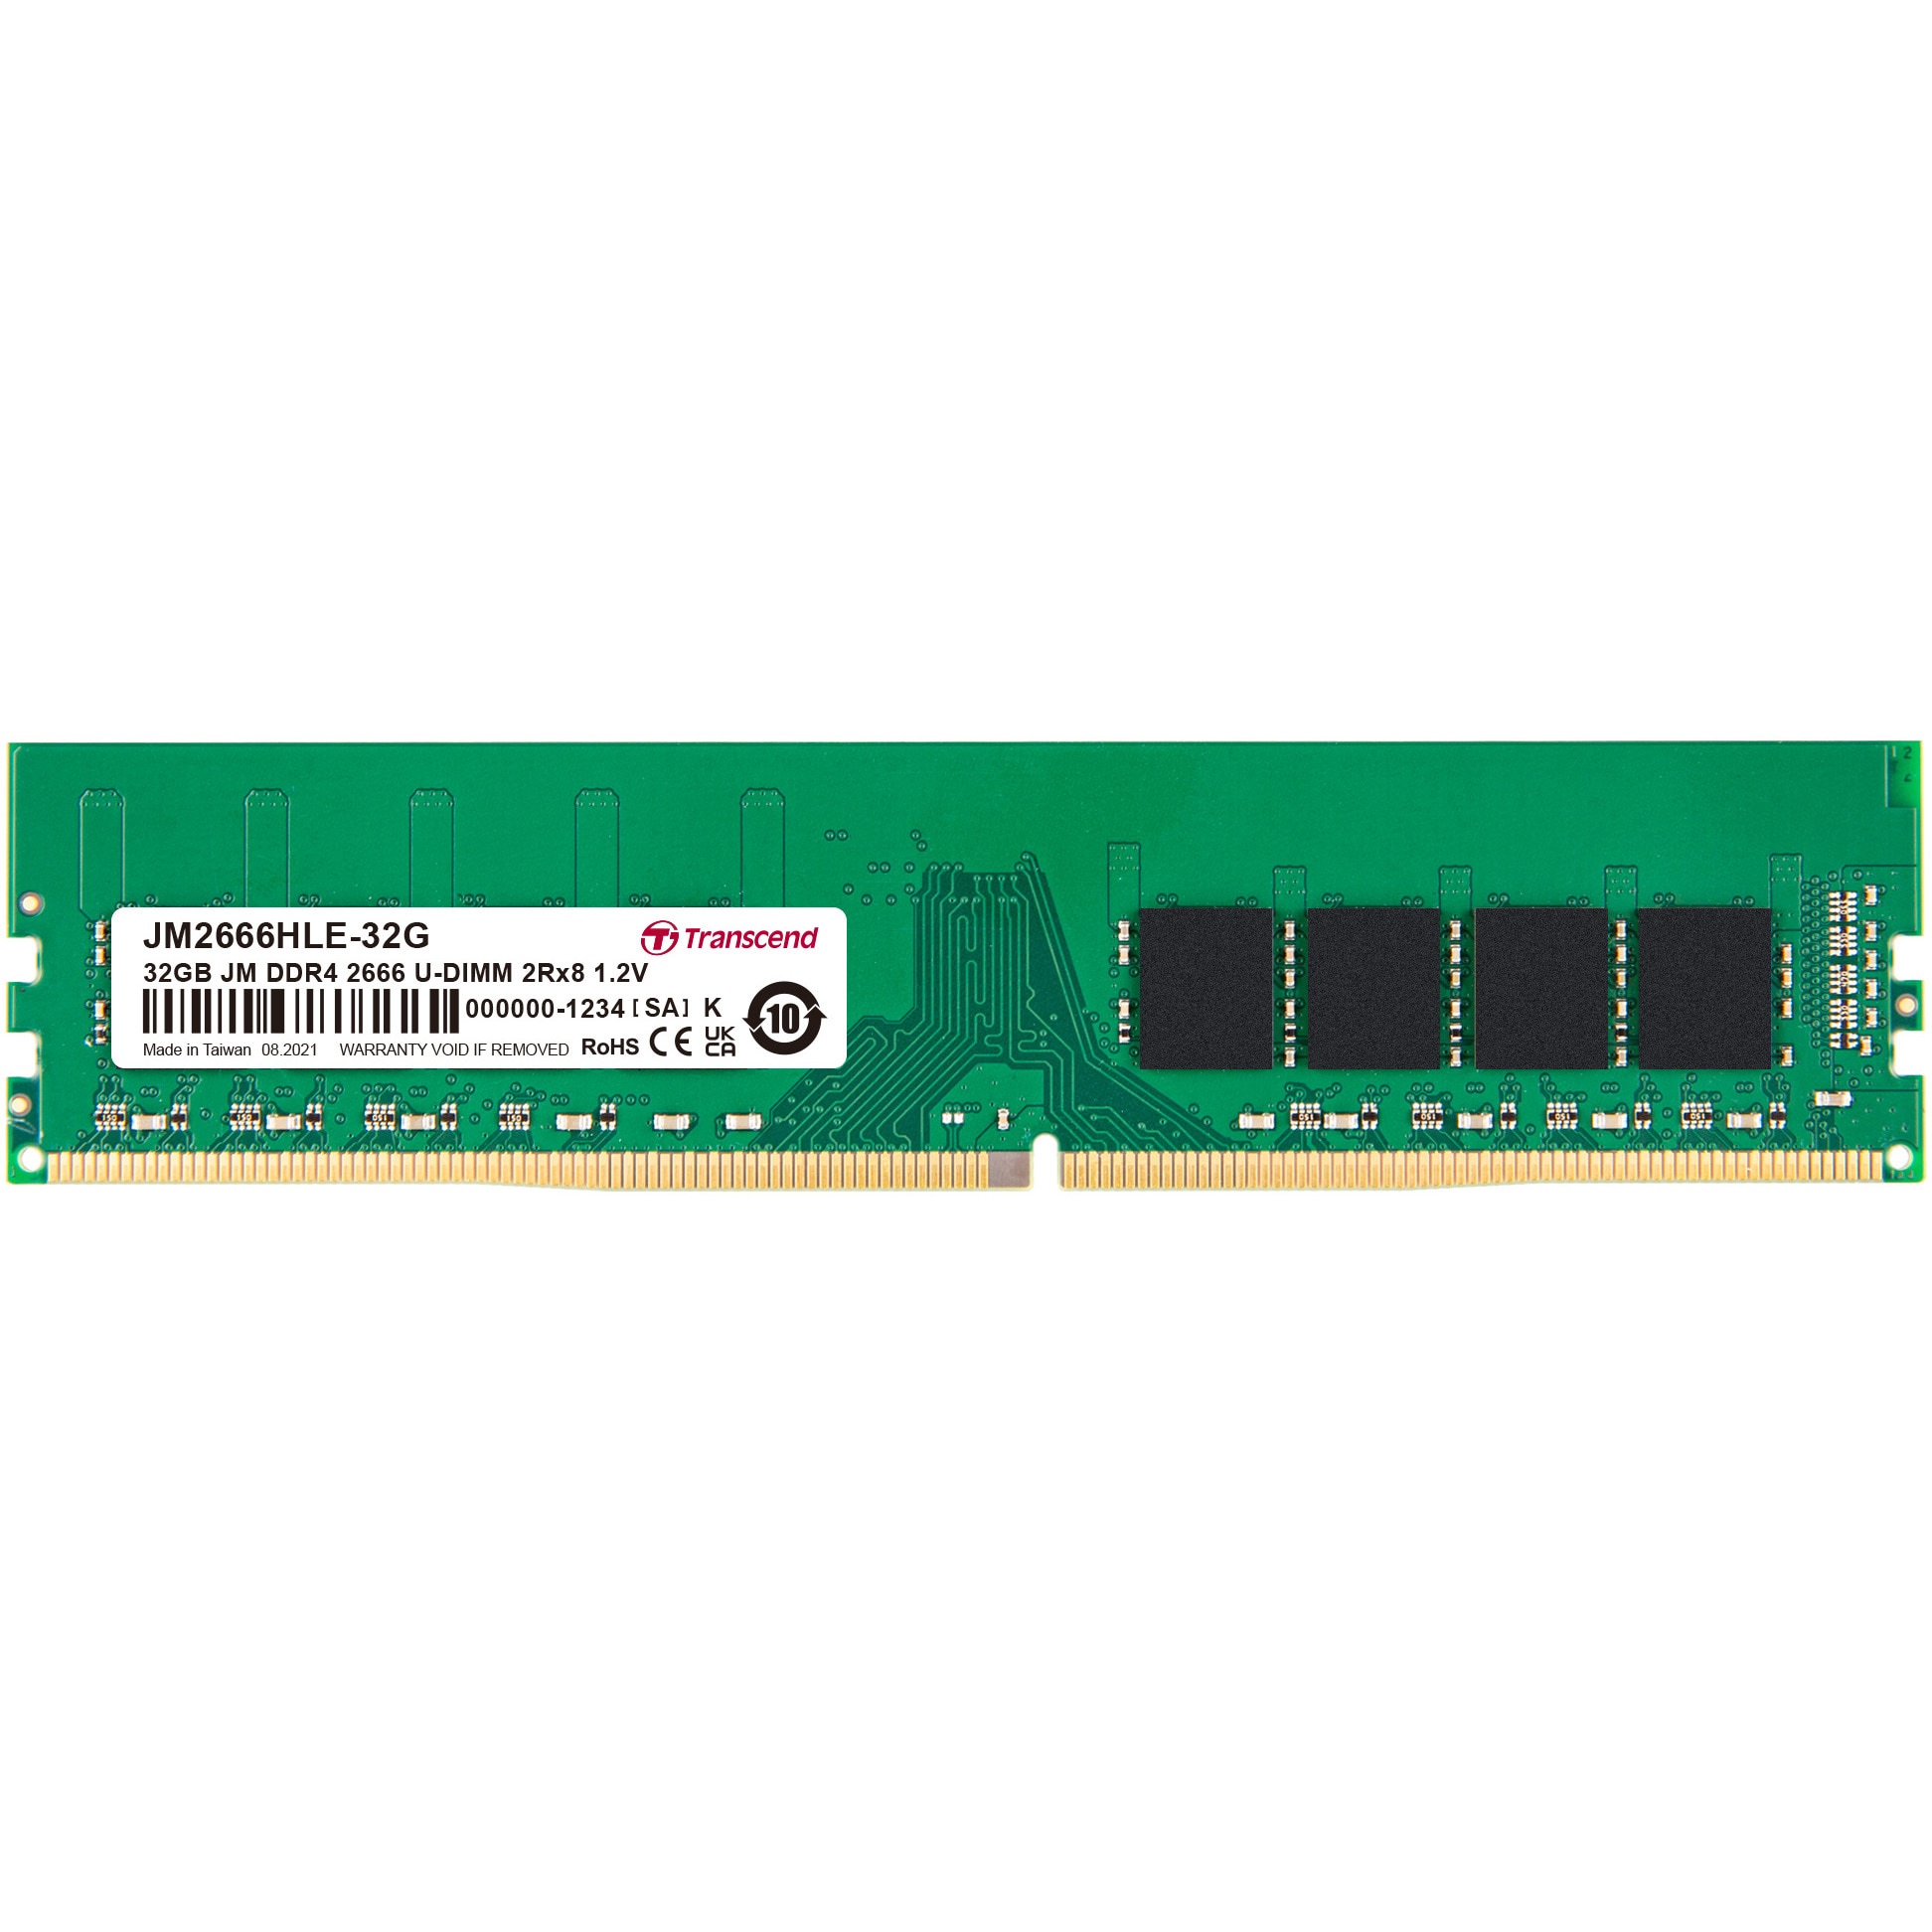 JM2666HLE-32G デスクトップPC用メモリ PC4-21300(DDR4-2666) 1.2V